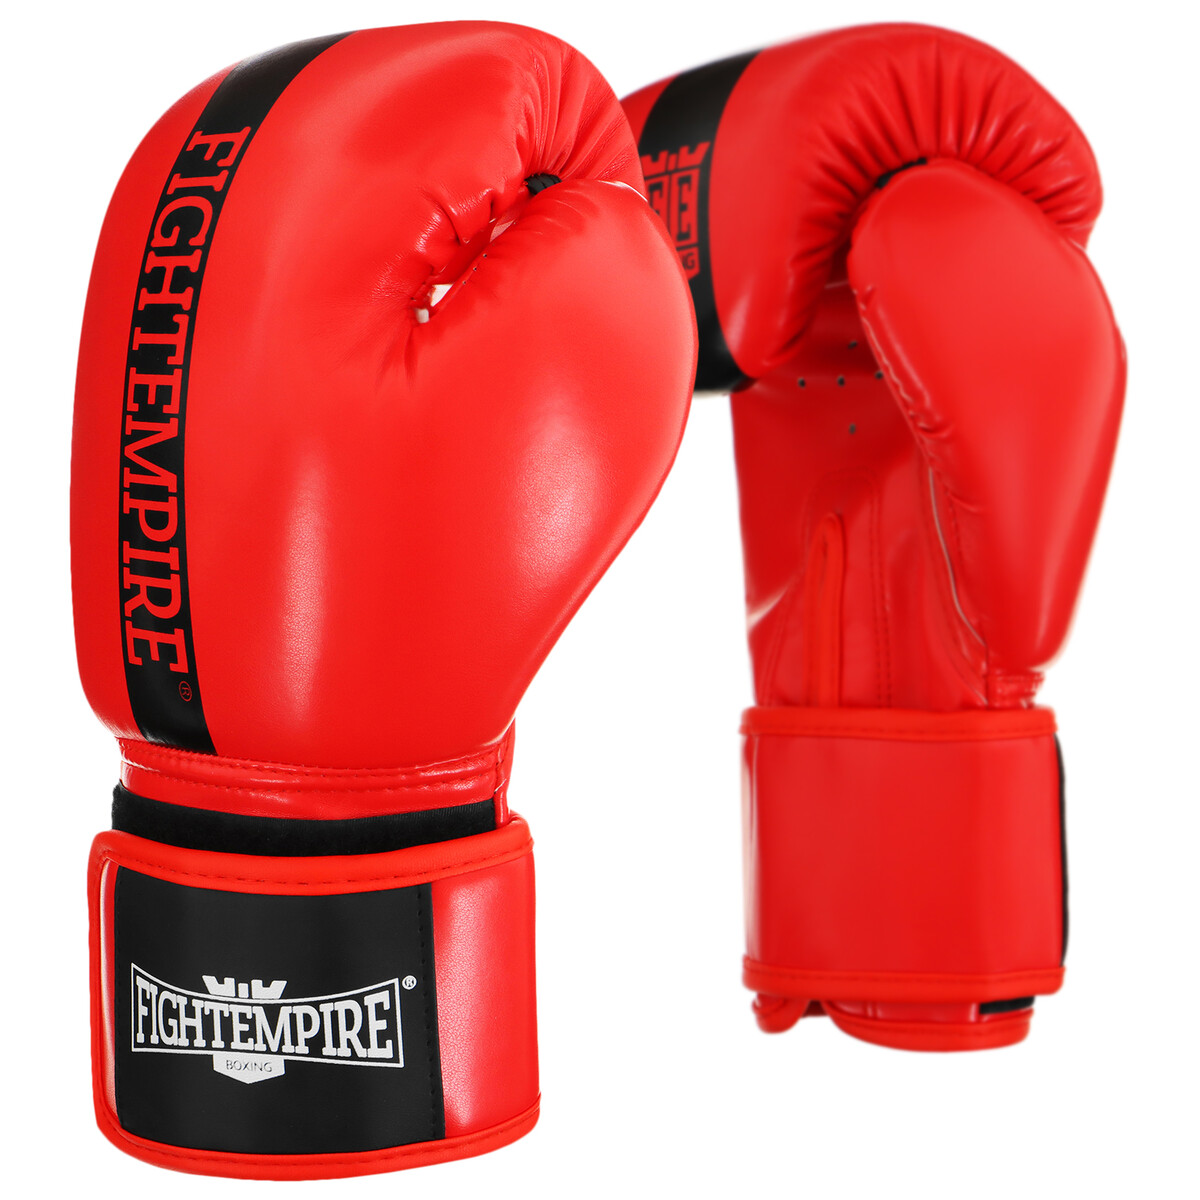 Перчатки боксерские fight empire, 10 унций, цвет красный перчатки боксерские fight empire 16 унций красный